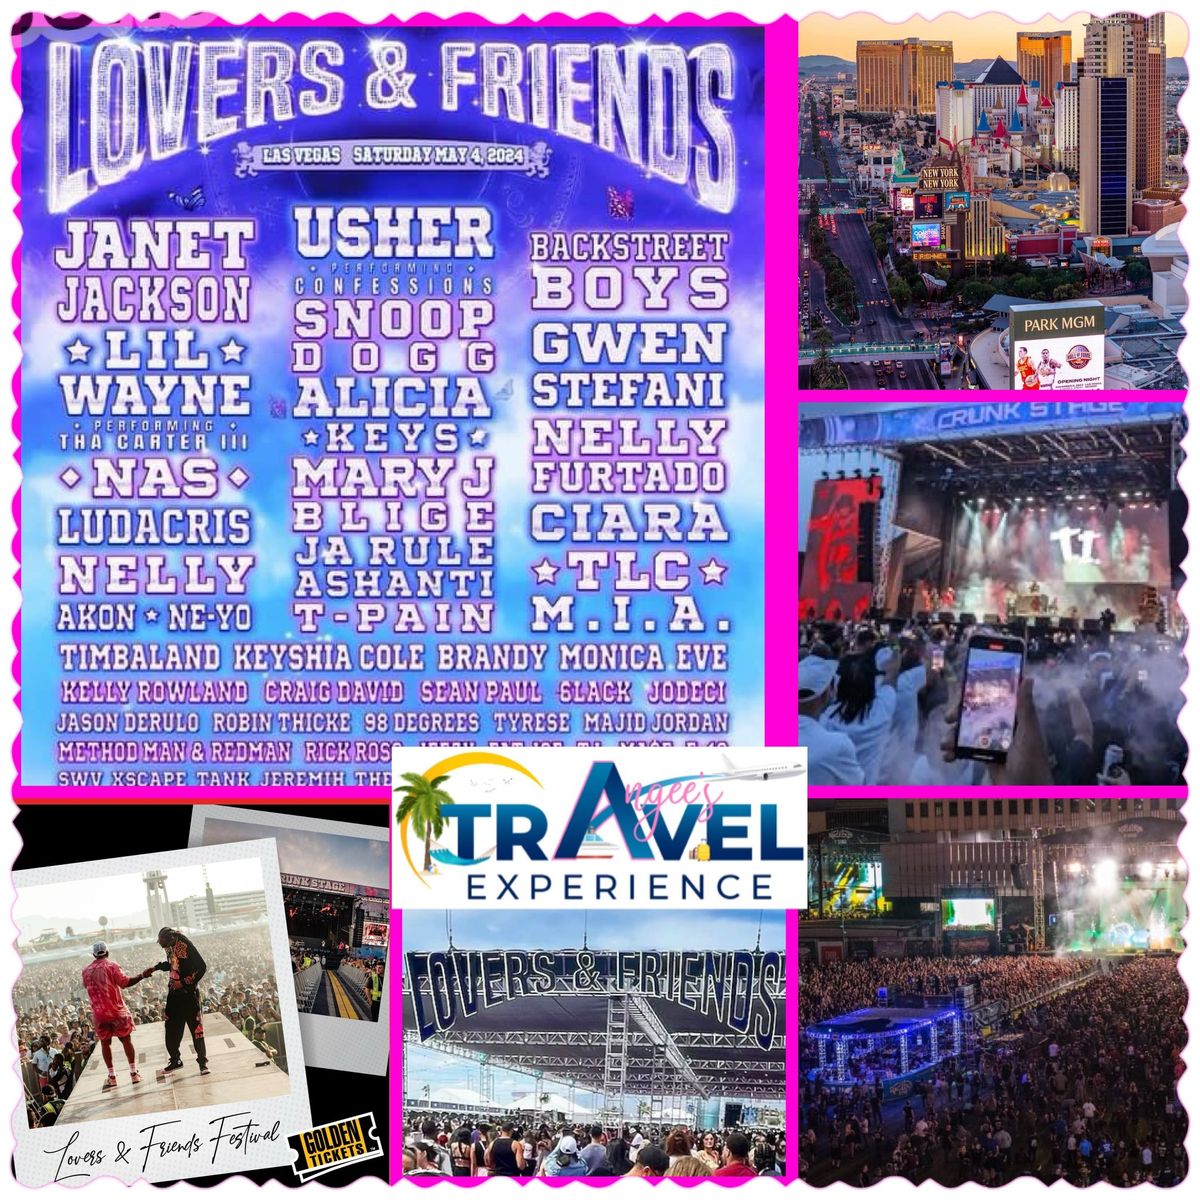 Lovers & Friends Fest 